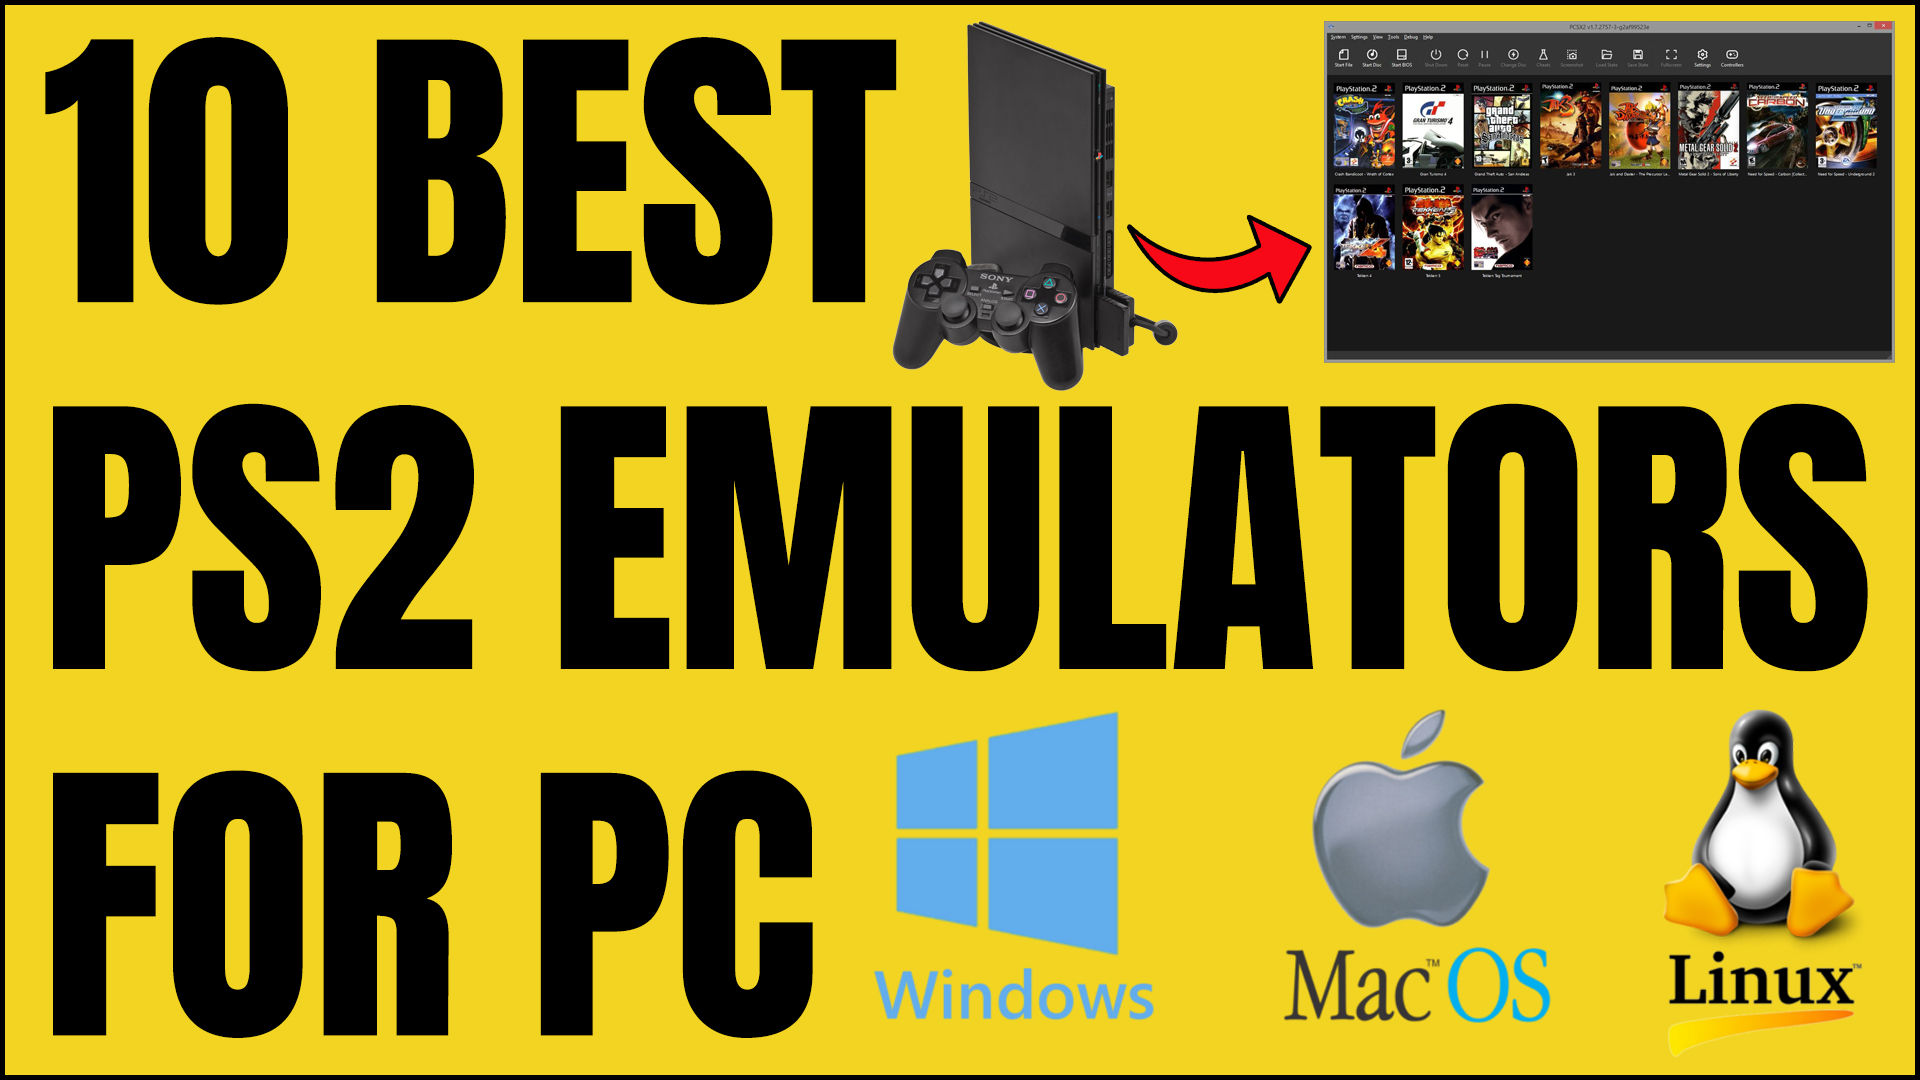 10 Best PS2 Emulators For PC/Windows